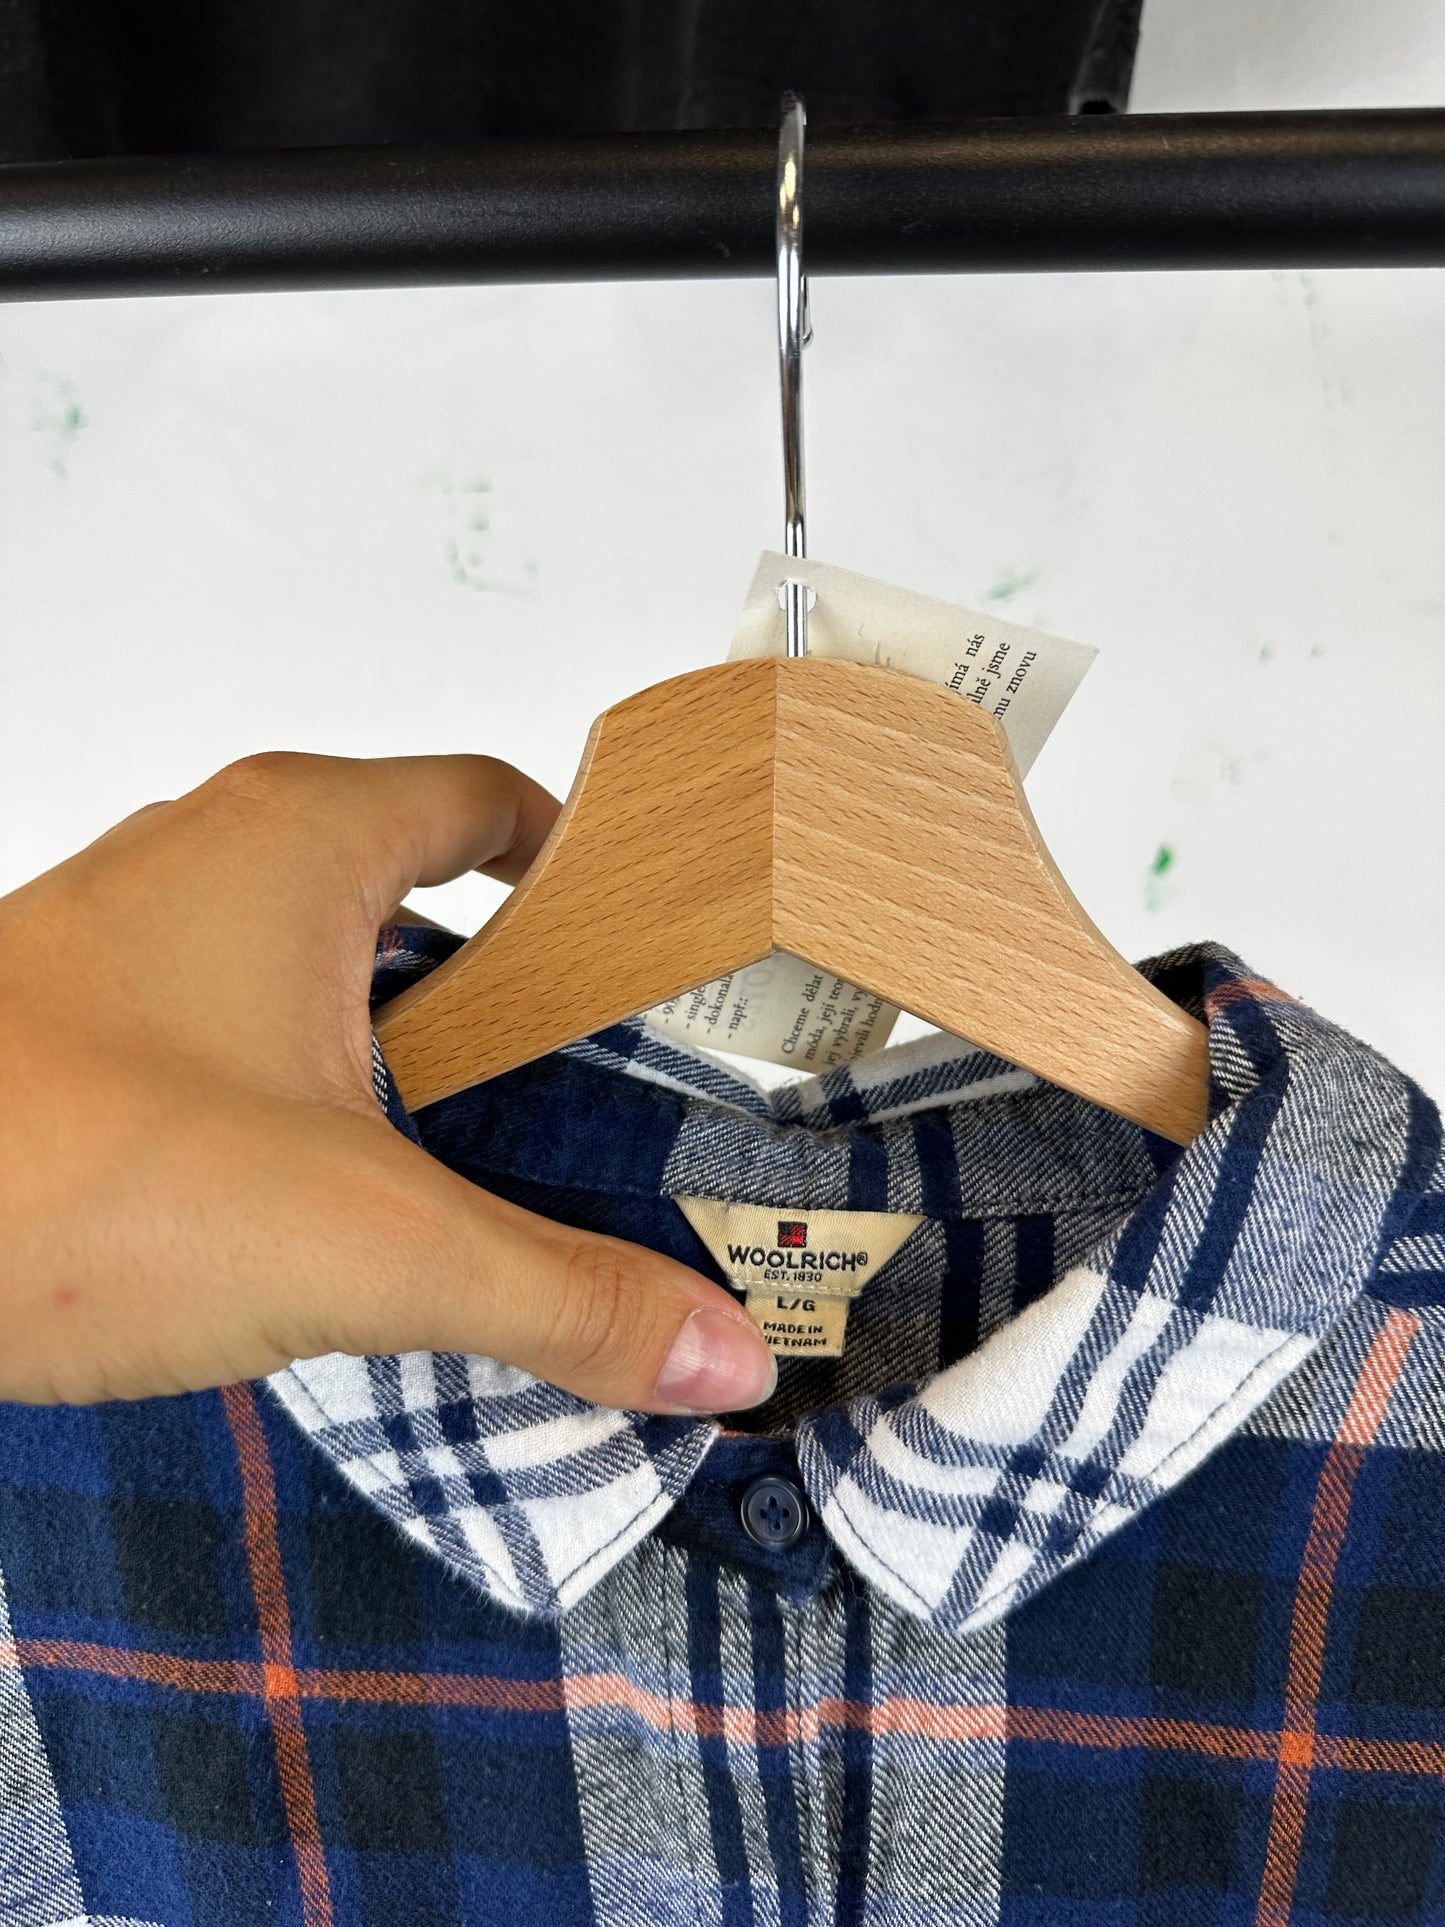 Vintage Flannel Shirt - size L